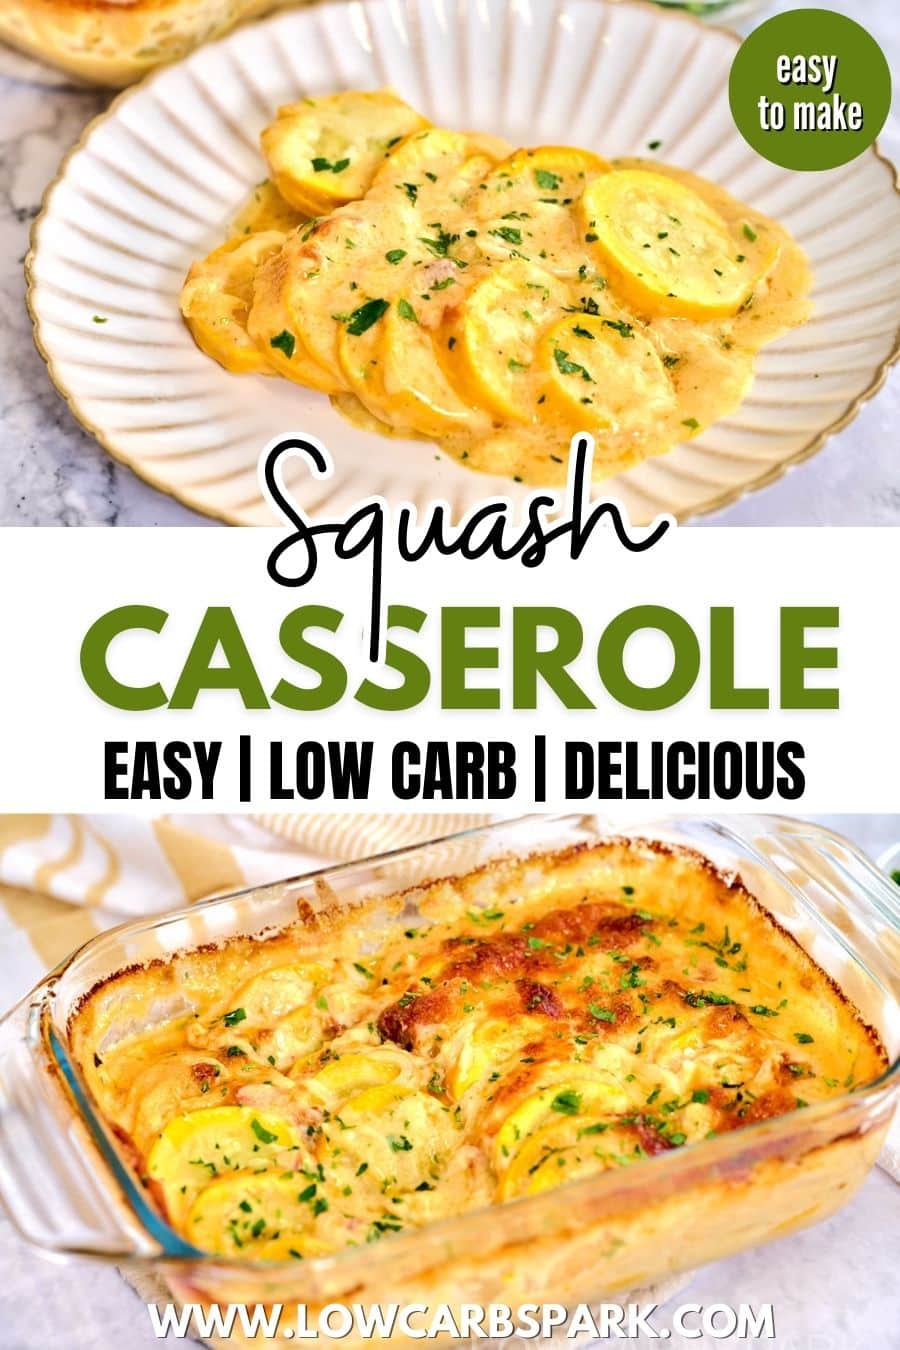 Squash Casserole